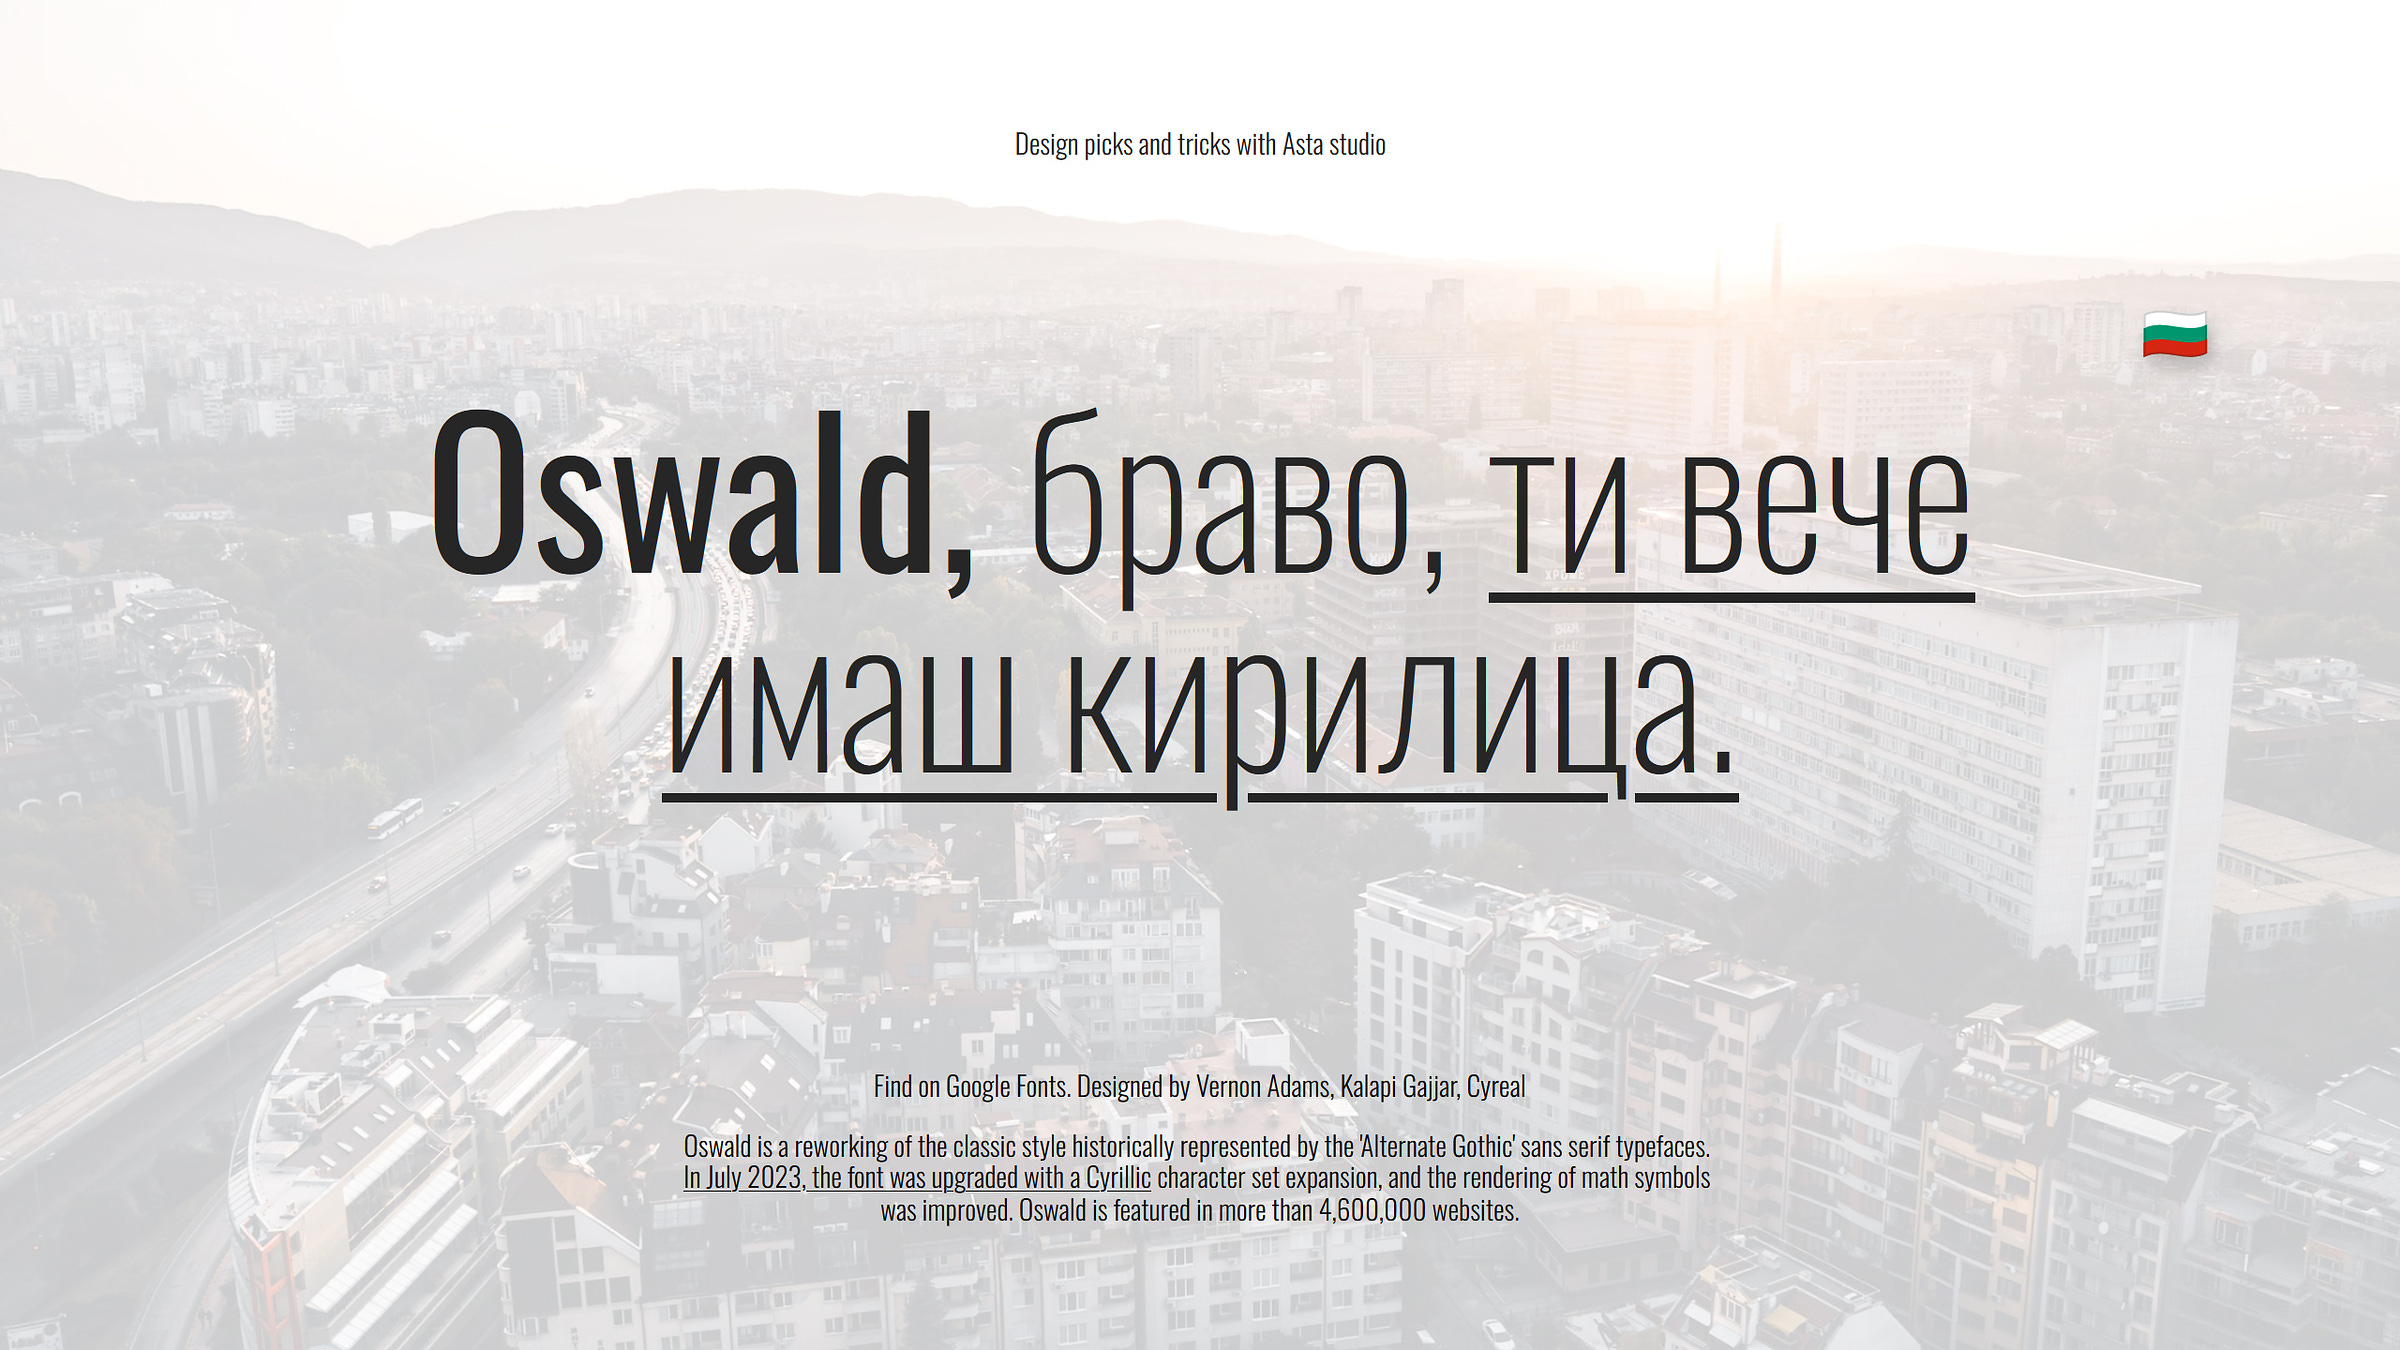 Oswald font use example on white / light background